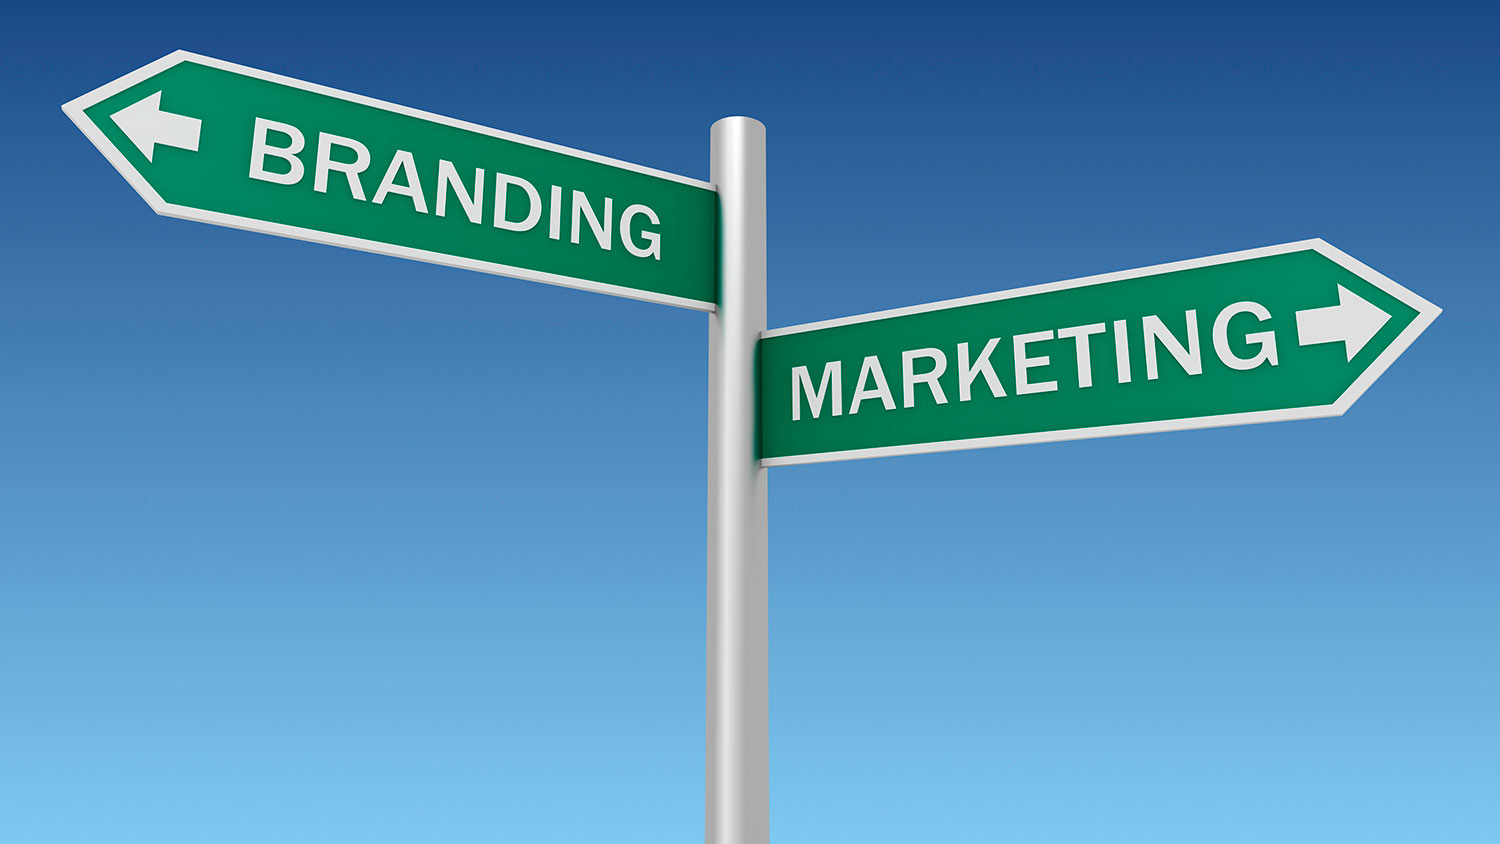 Diferencias entre Branding y Marketing. ¿Por qué son diferentes?